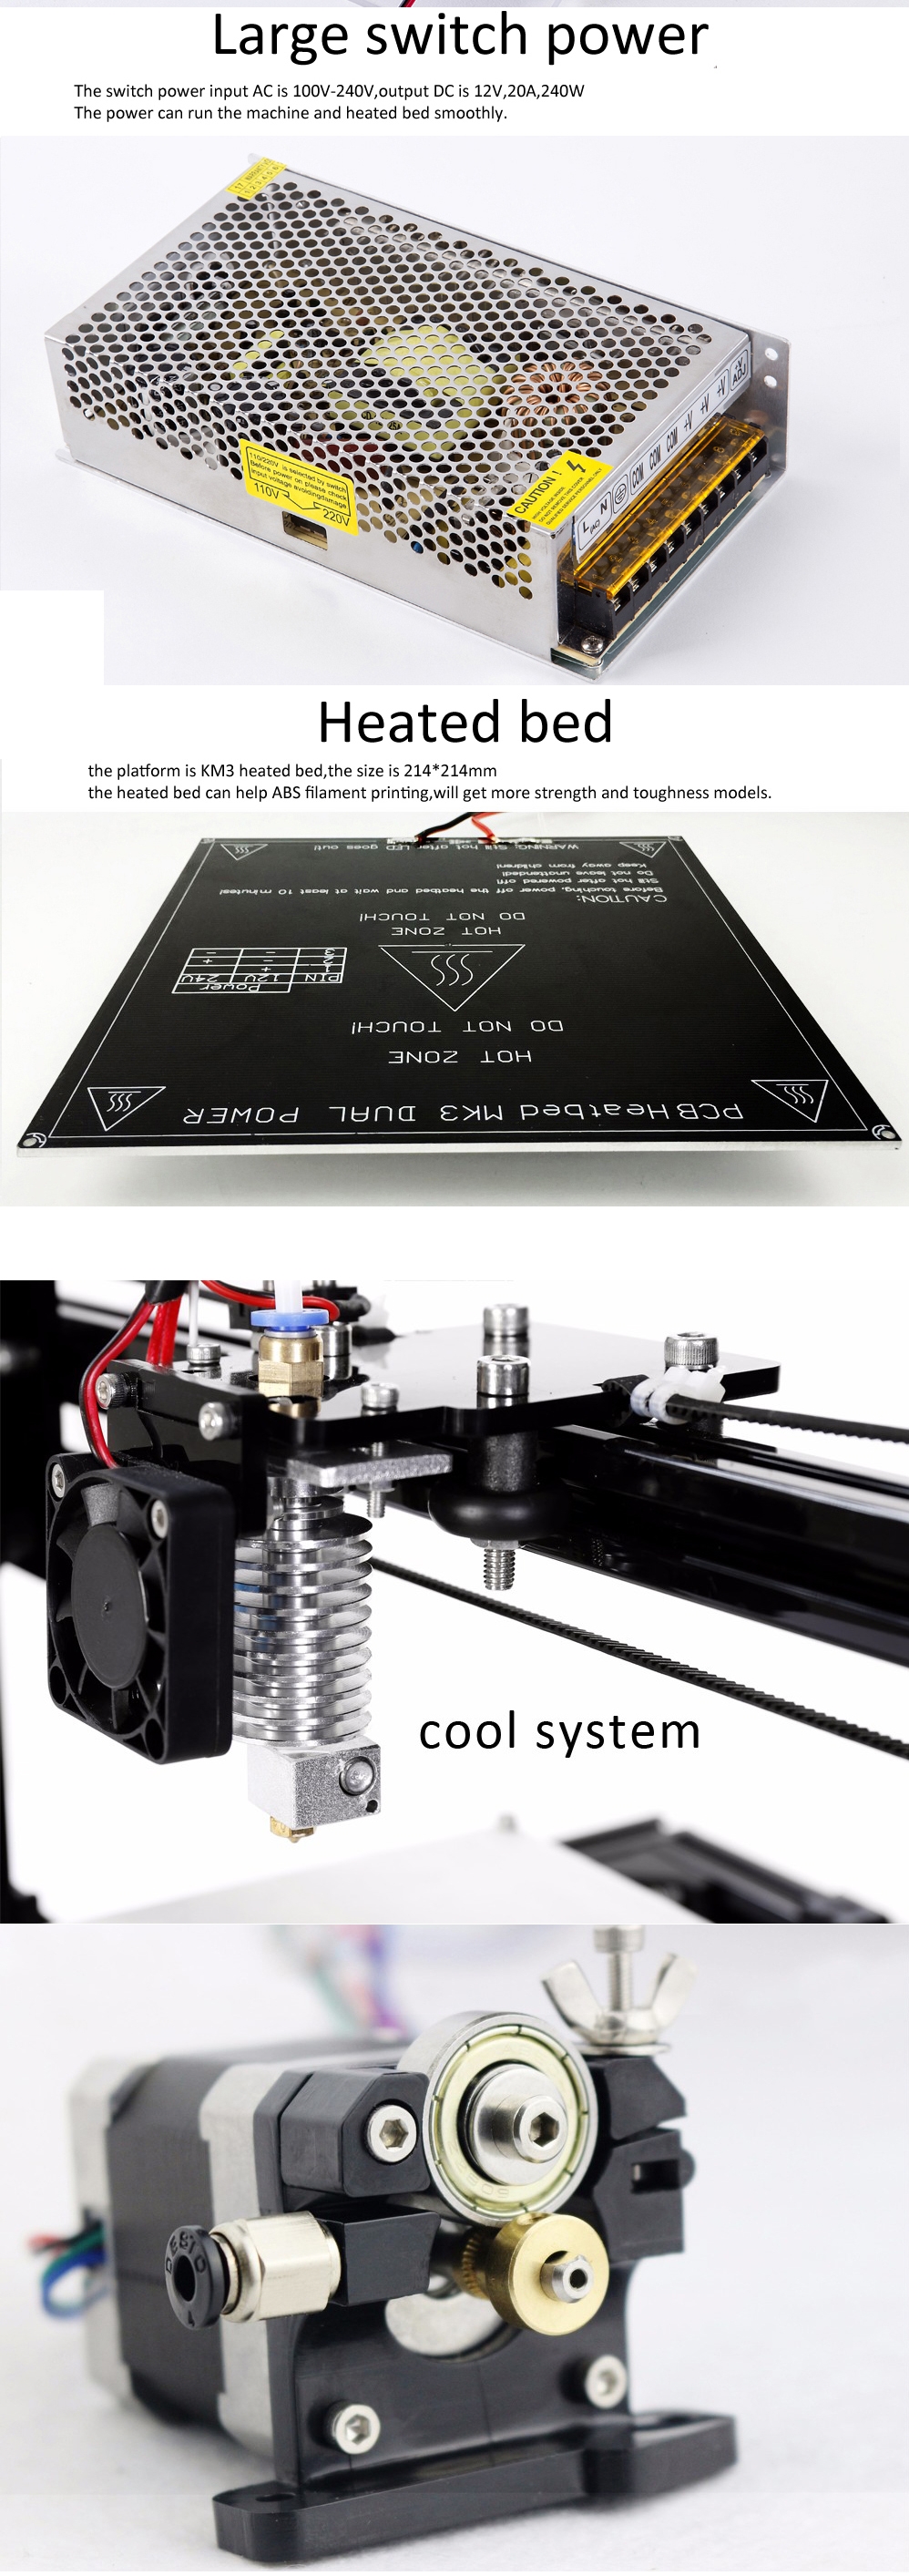 FLSUN® C Plus Desktop DIY 3D Printer With Touch Screen Dual Nozzle Auto Leveling Double Z-motors Support Flexible Filament 300*300*420mm Printing Size 14